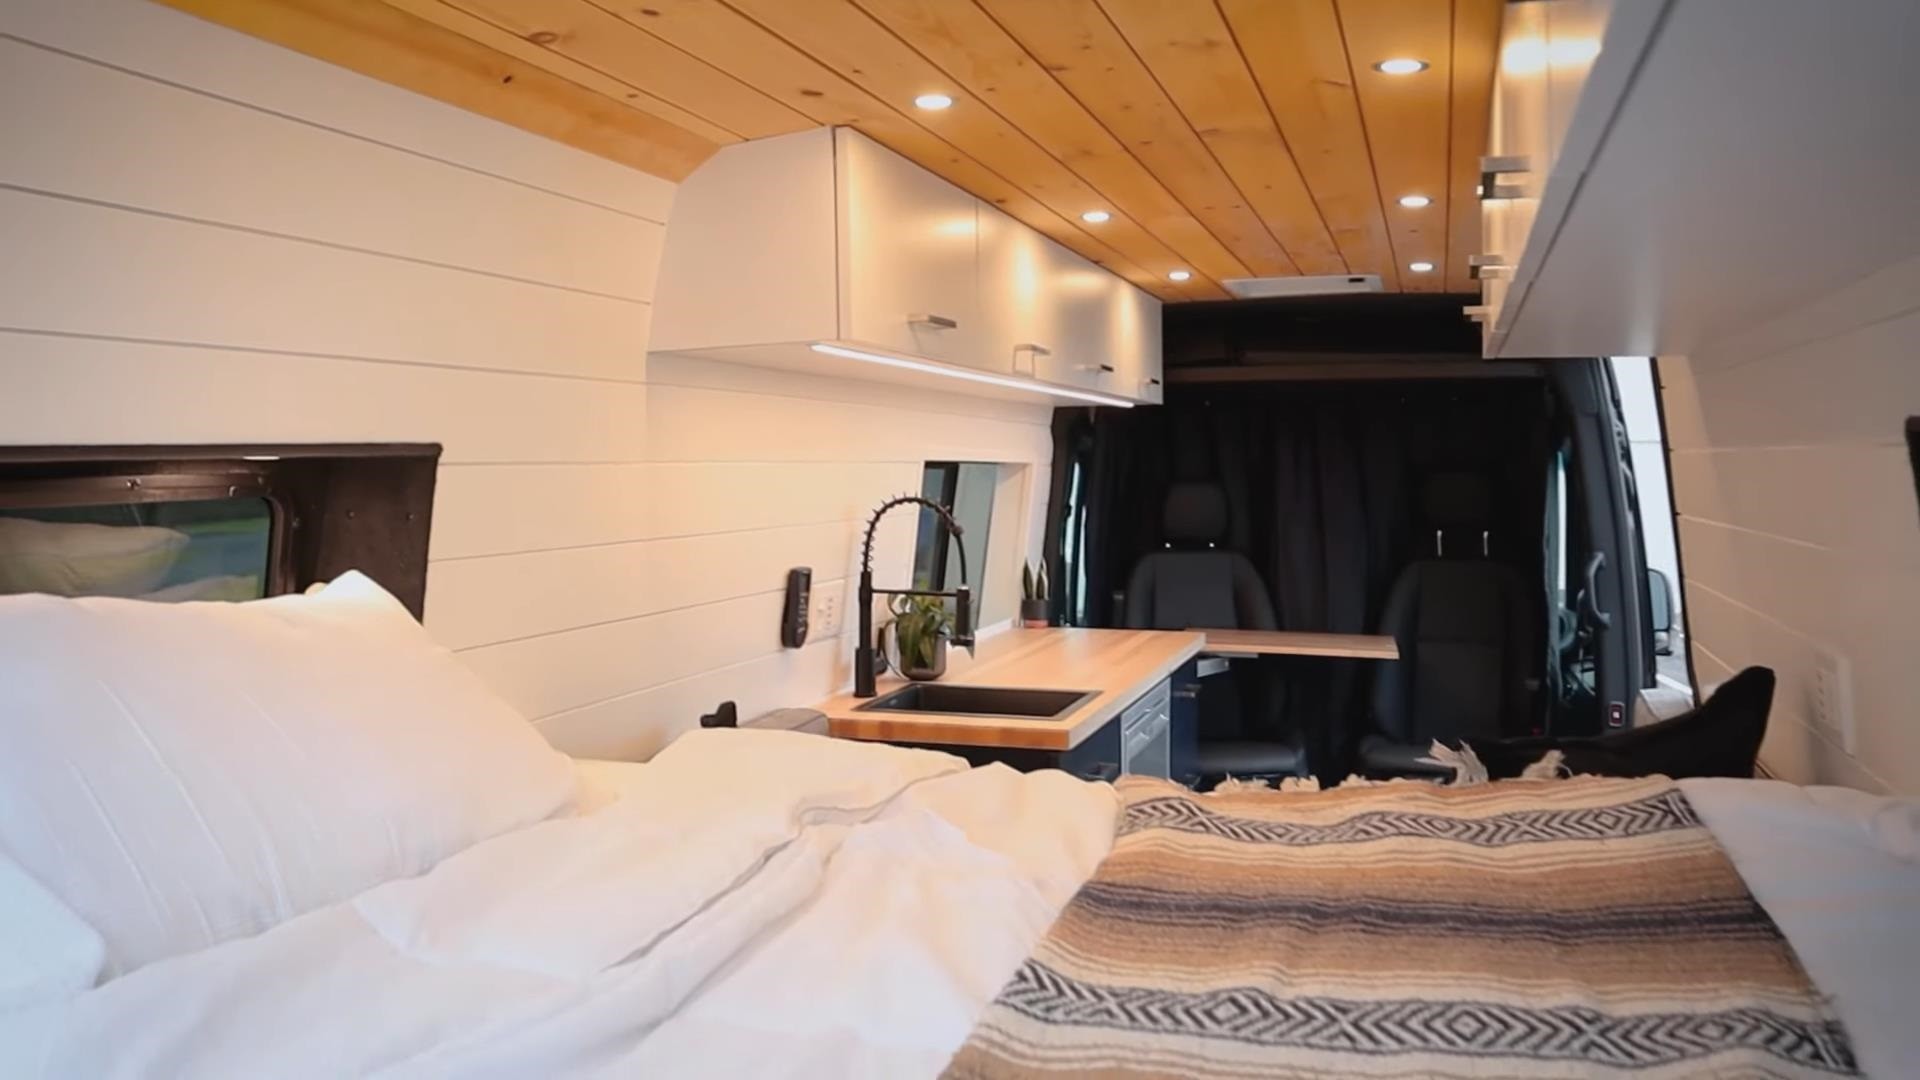 Фургон Sprinter 4x4 максимально увеличивает жилое пространство за счет интеграции скрытой ванной комнаты